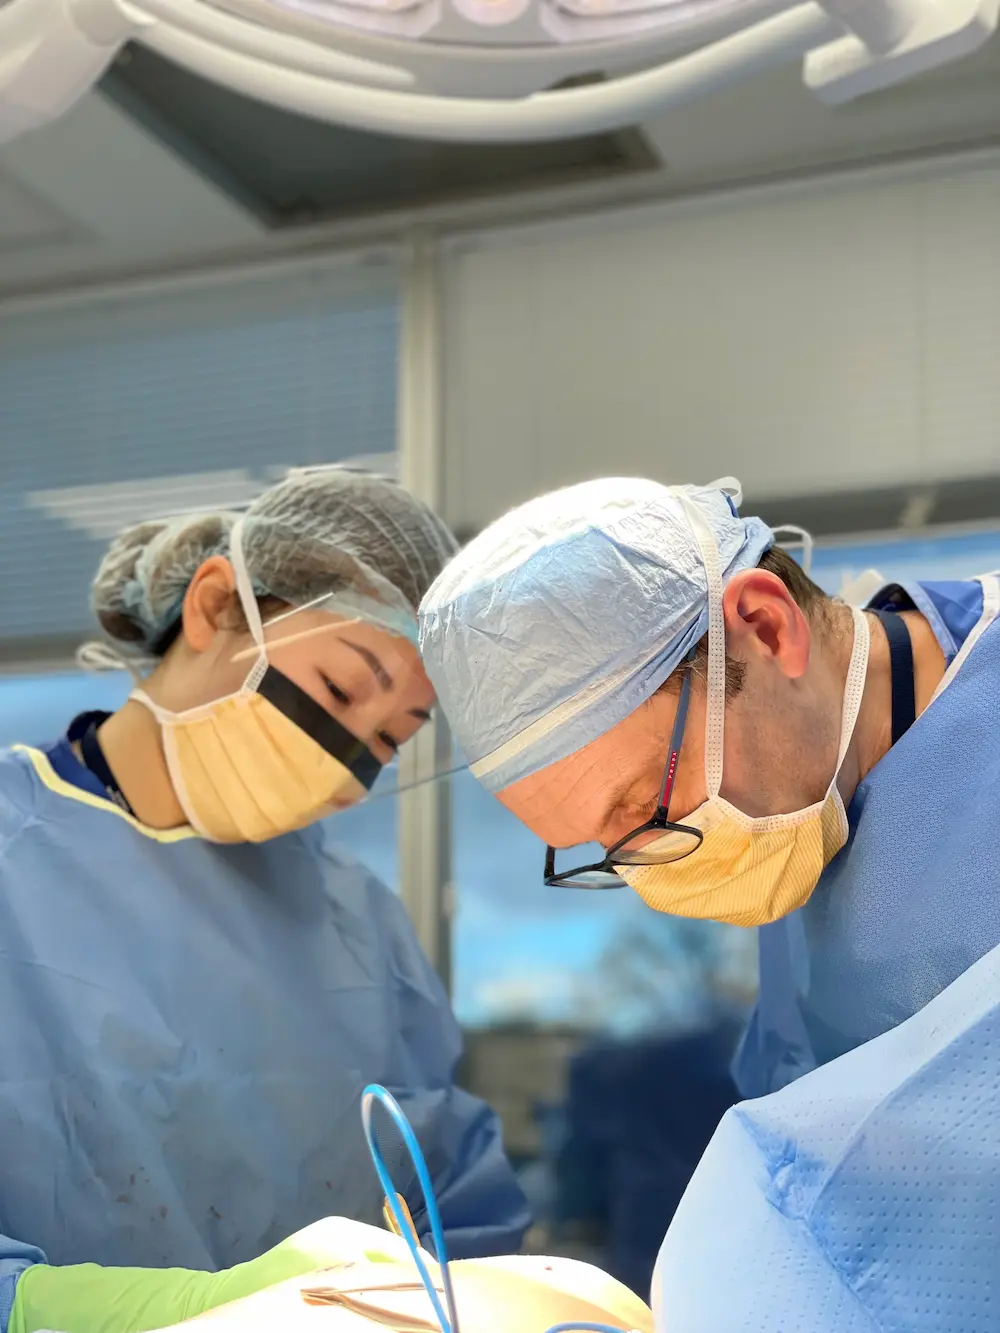 Dr. Dobryansky operating on patient